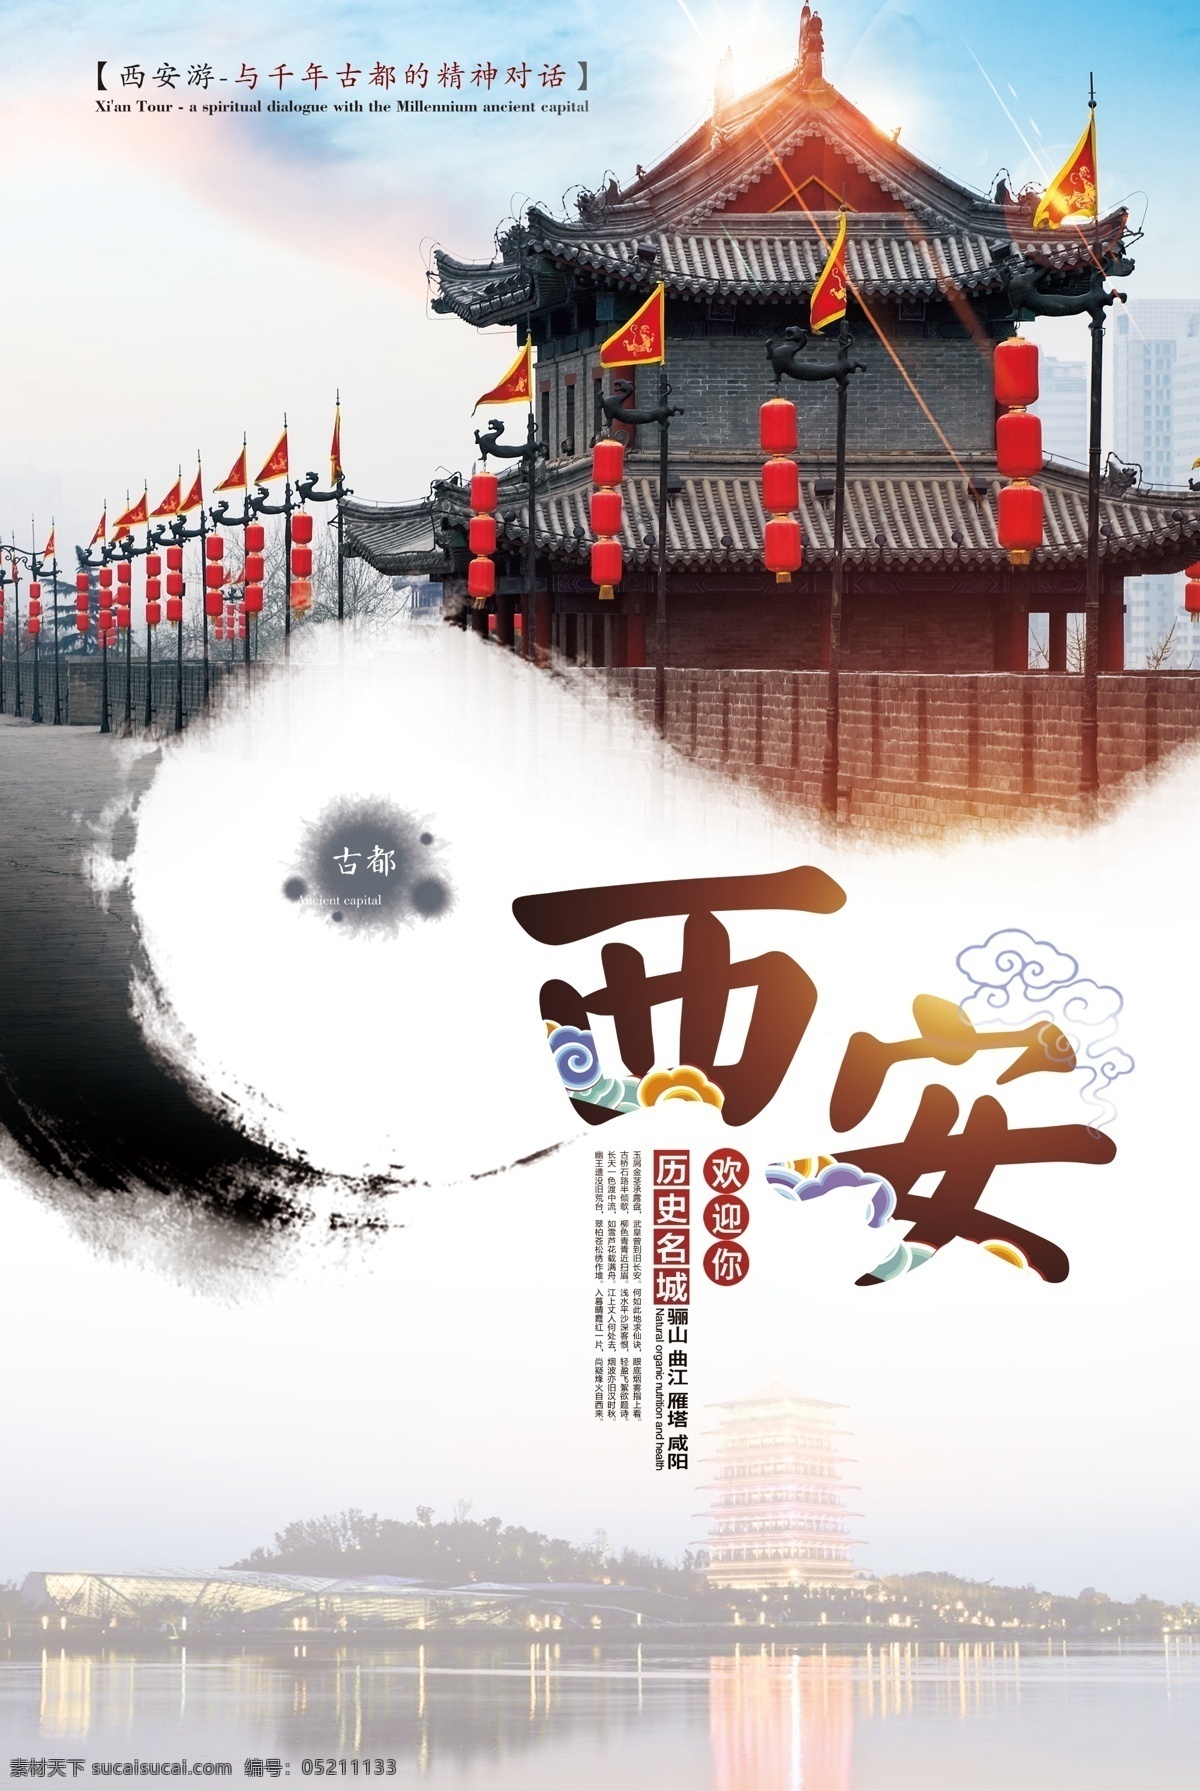 西安旅游 创意 海报 兵马俑 文化 西安 中国西安旅游 中国旅游 古都西安 大雁塔 古城墙 宣传单 免费模版